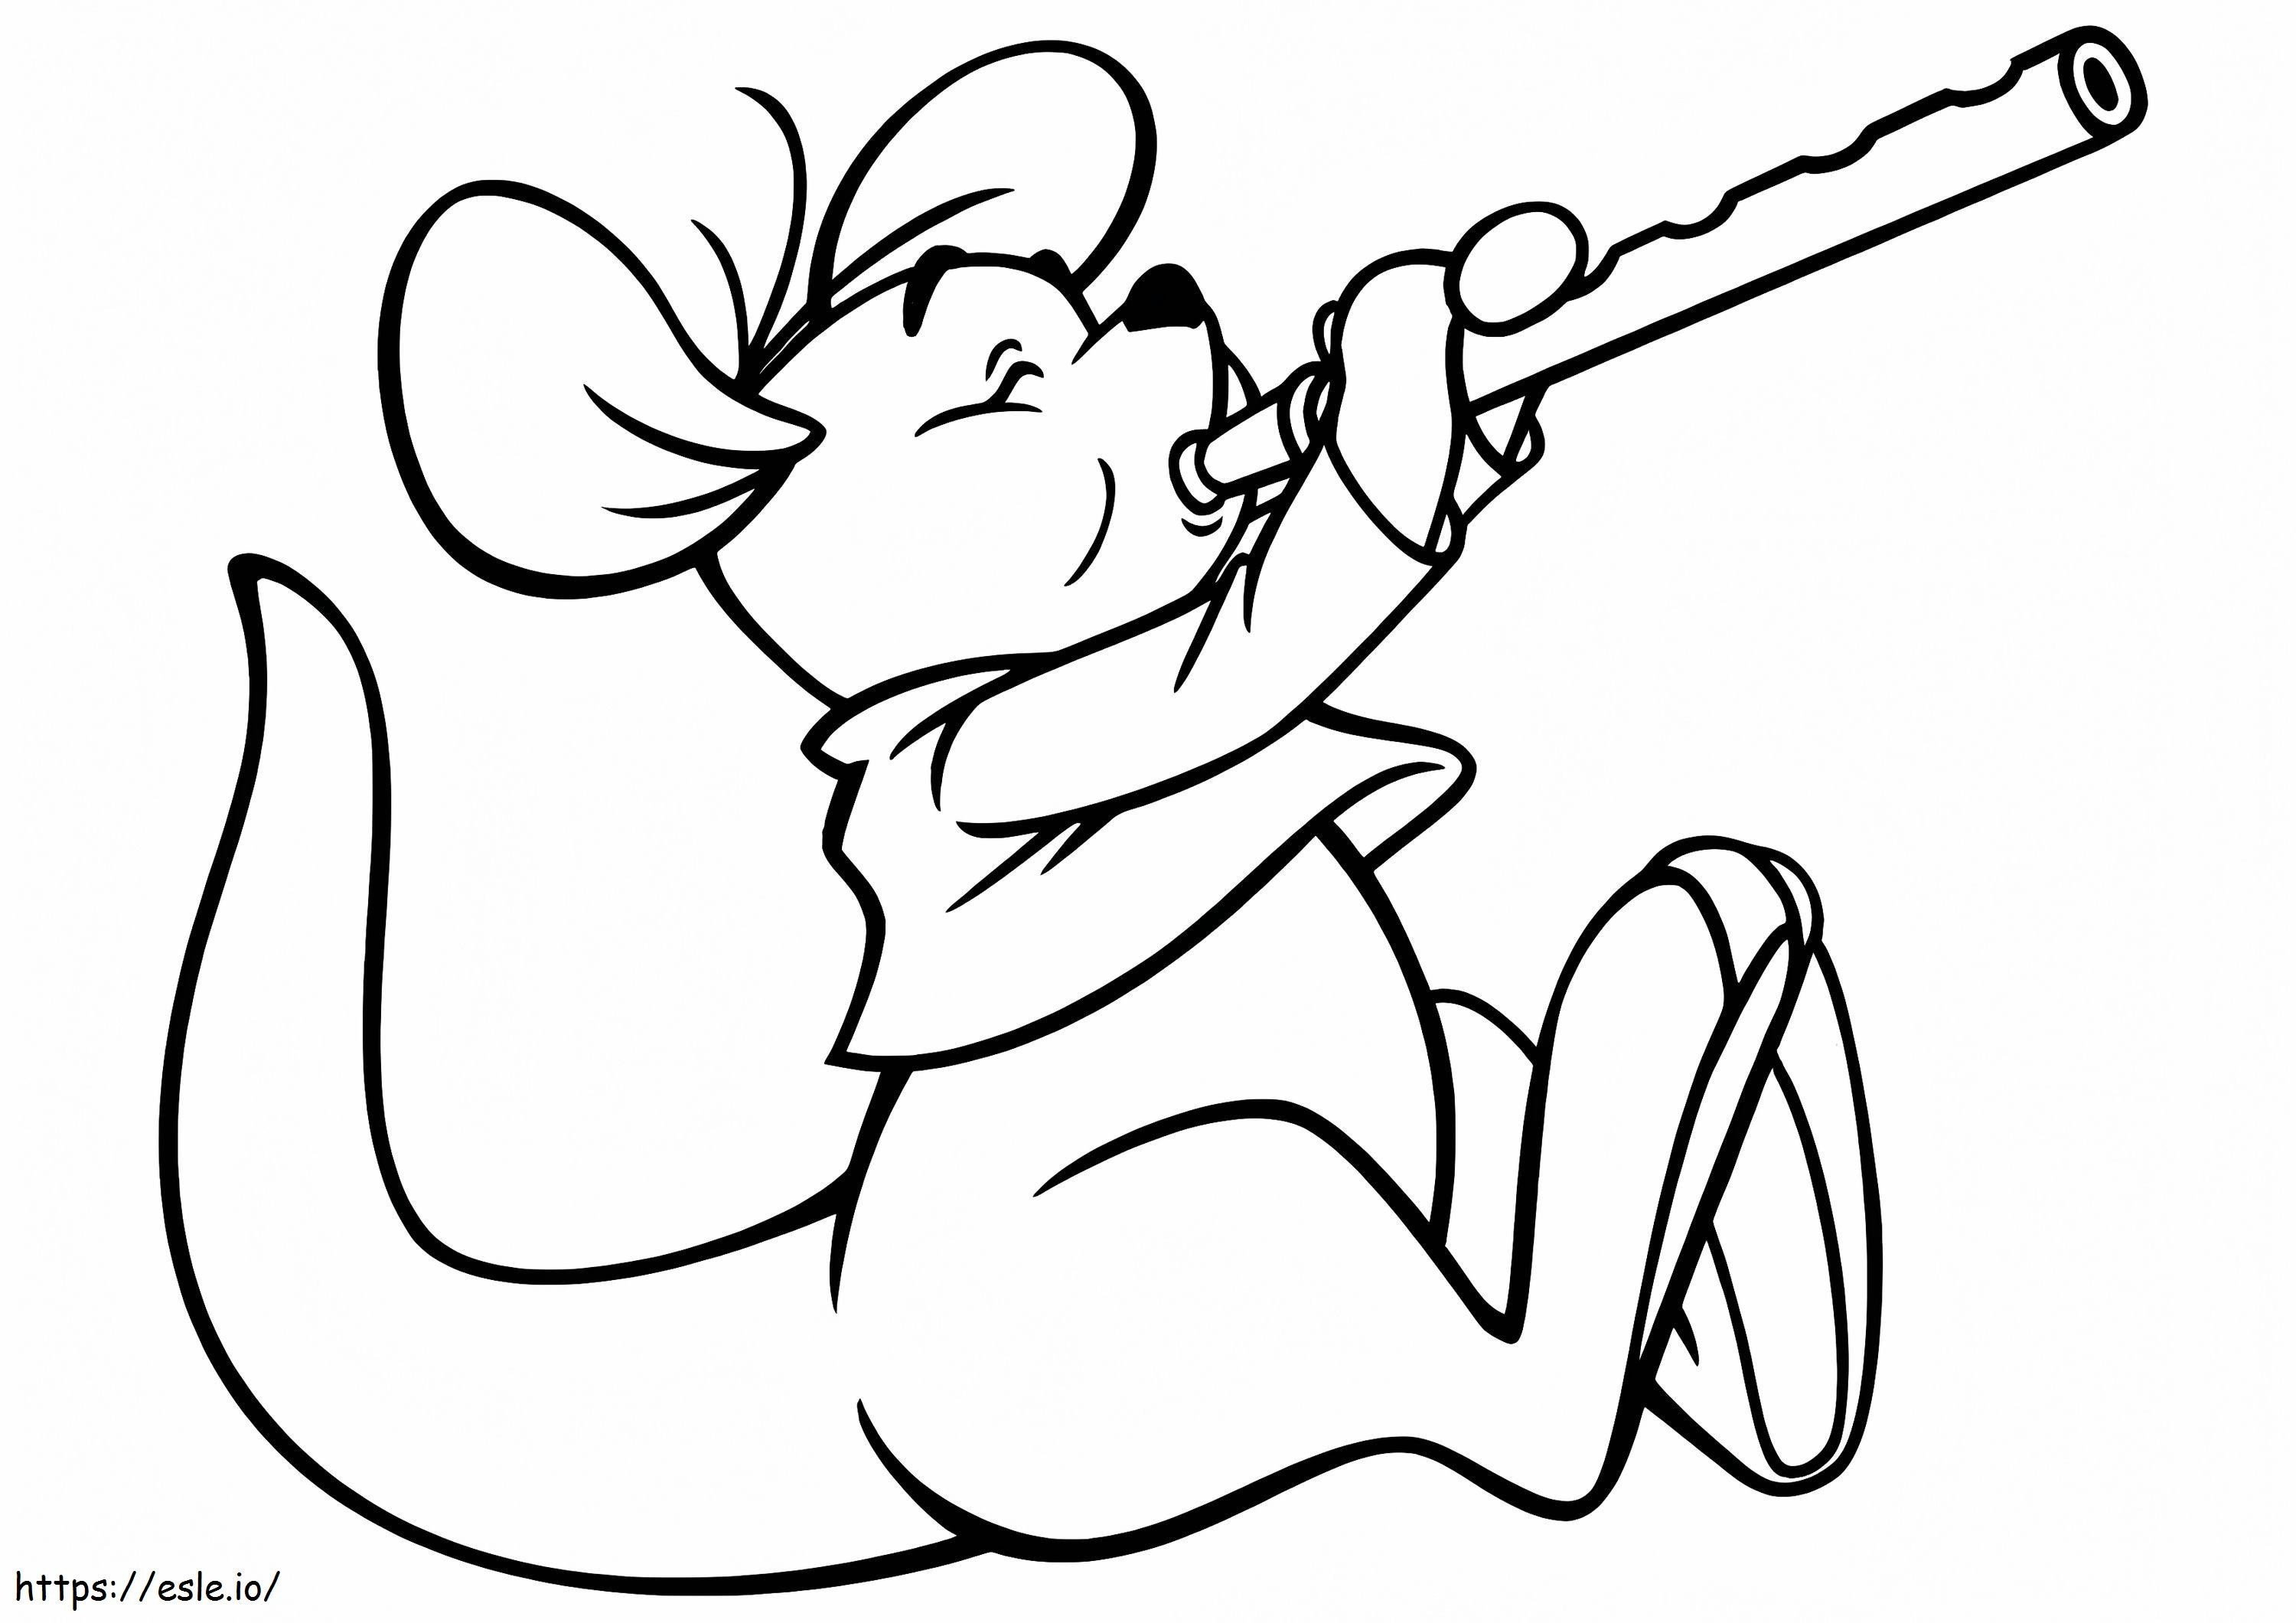 Mysz gra na flecie kolorowanka